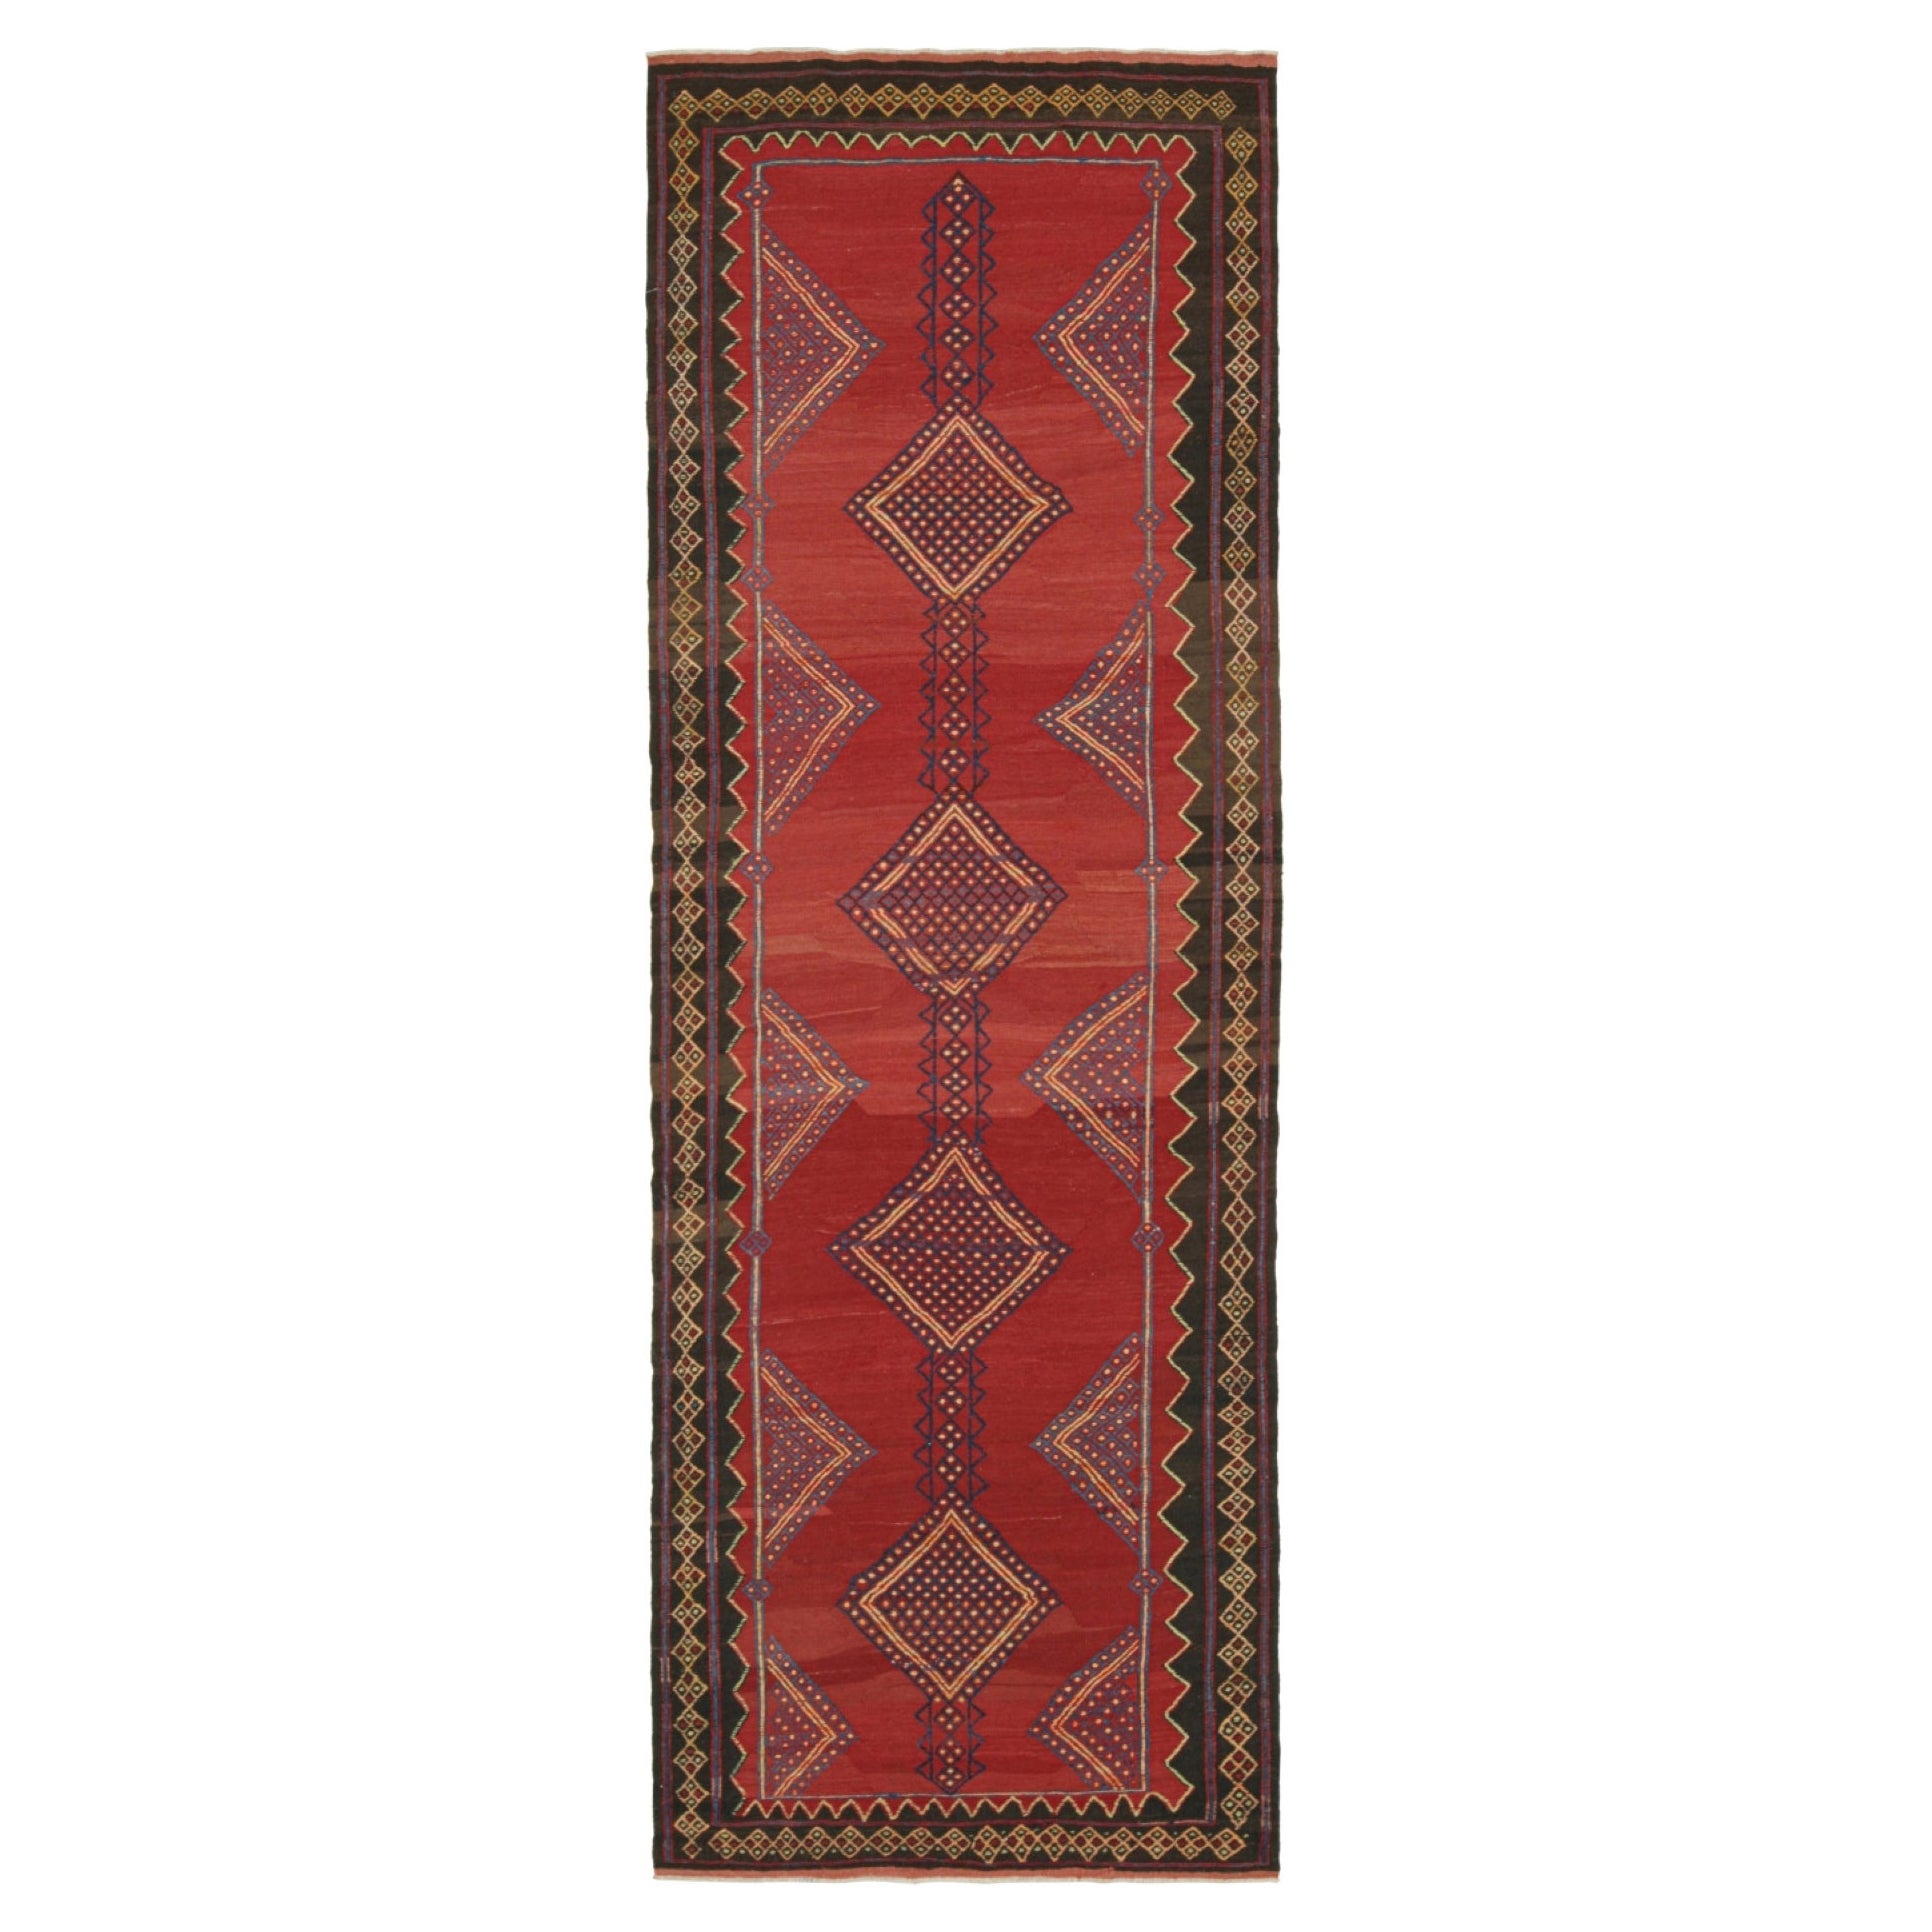 Kilim persan vintage rouge avec motifs géométriques bleus